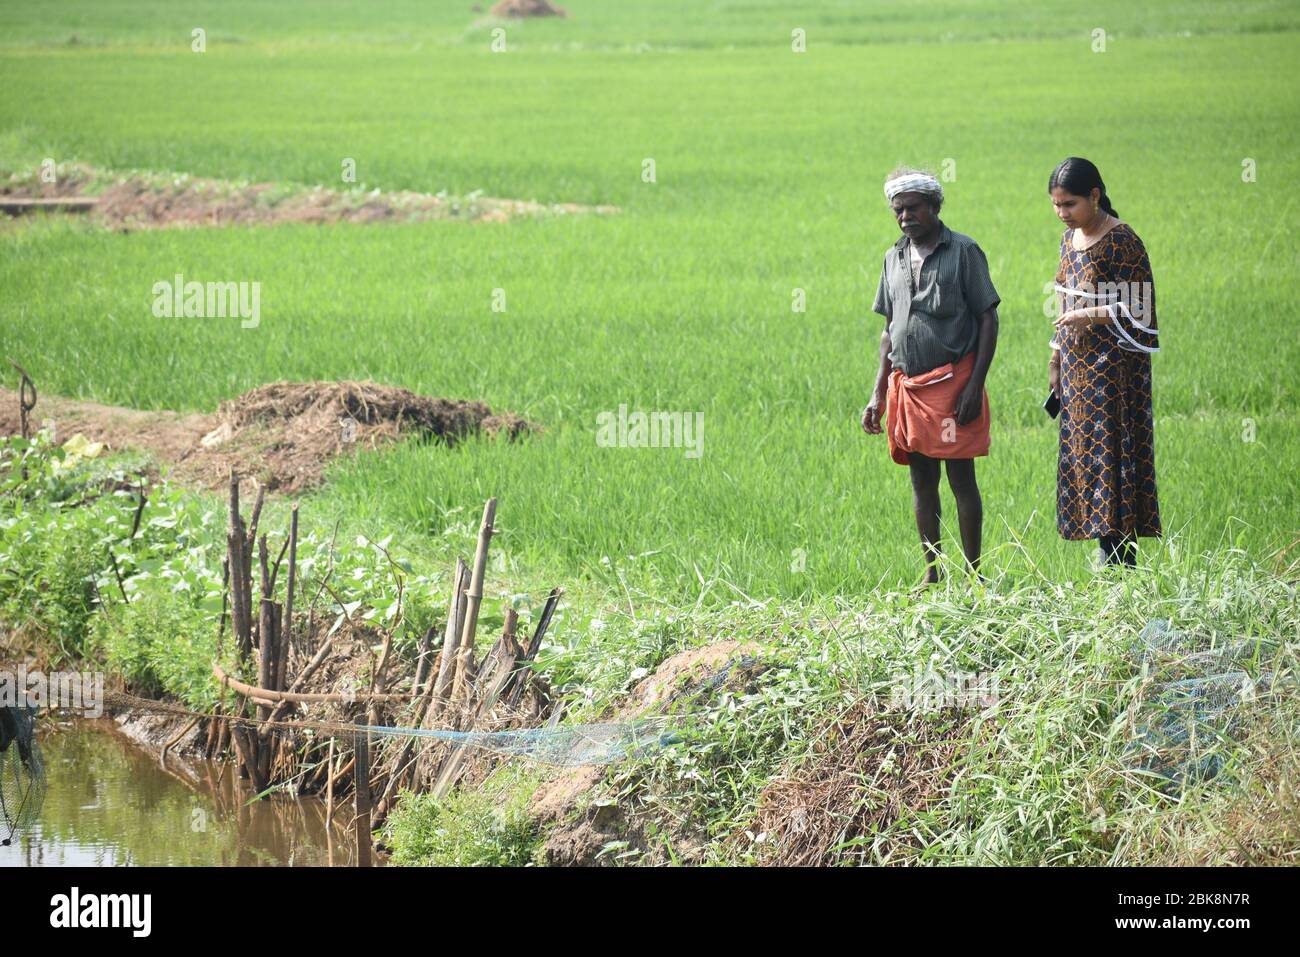 Agriculture agriculteur de l'Asie concept de travail de champ de riz. Les agriculteurs cultivent le riz pendant la saison des pluies. Agriculteur asiatique travaillant sur le champ de riz en plein air dans Agricultural o Banque D'Images